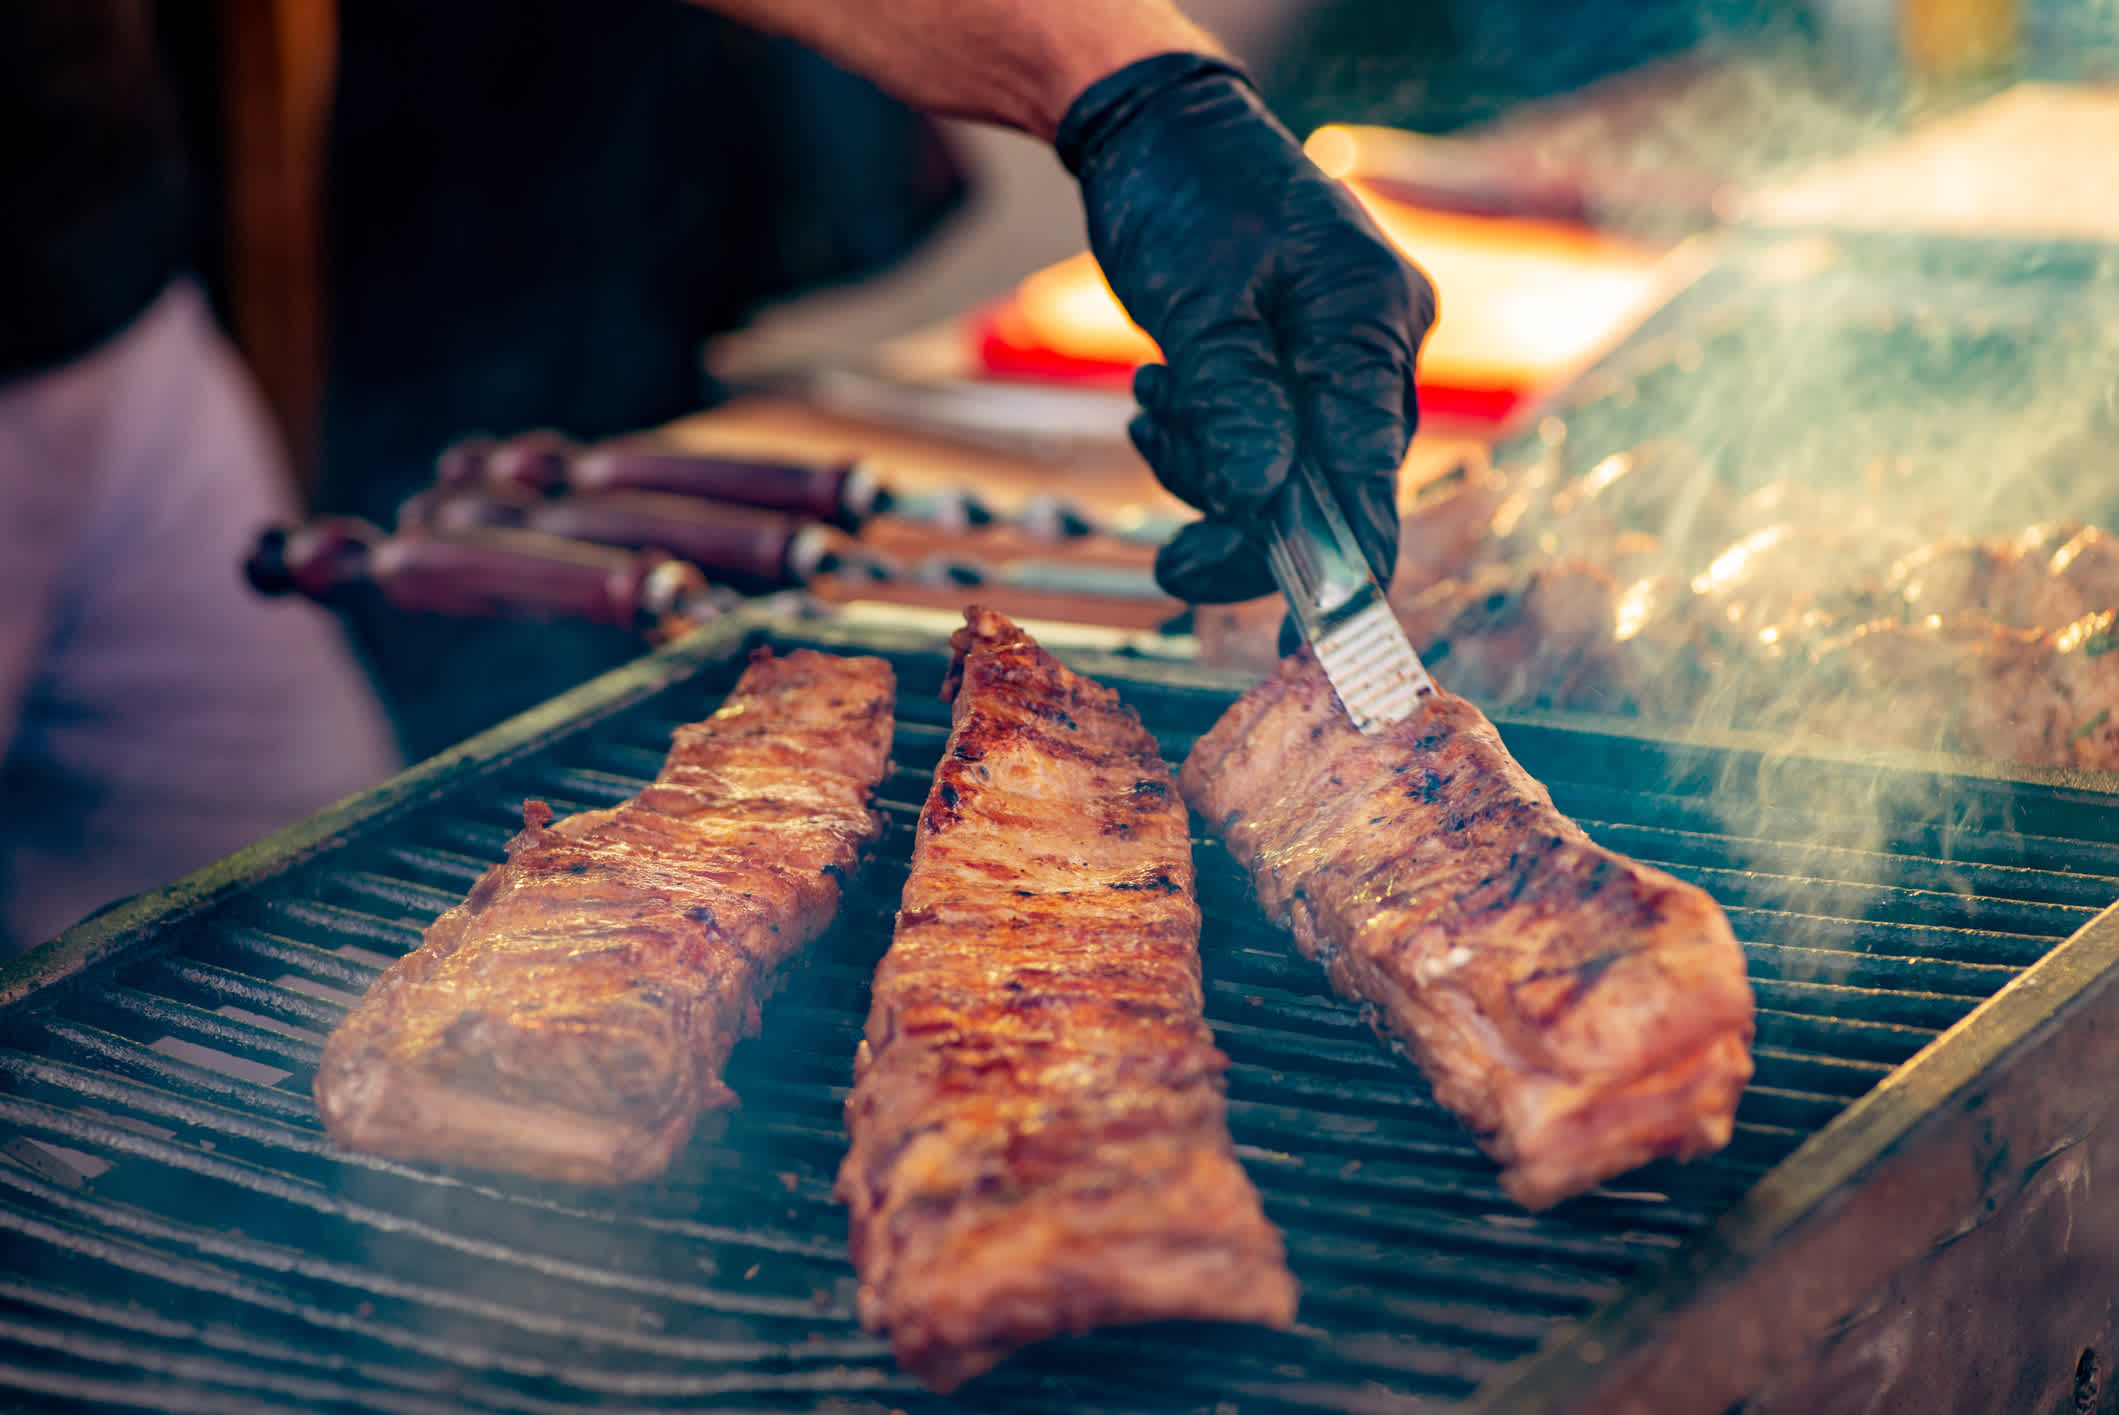 Les spare ribs au barbecue, un plat typique des États-Unis.